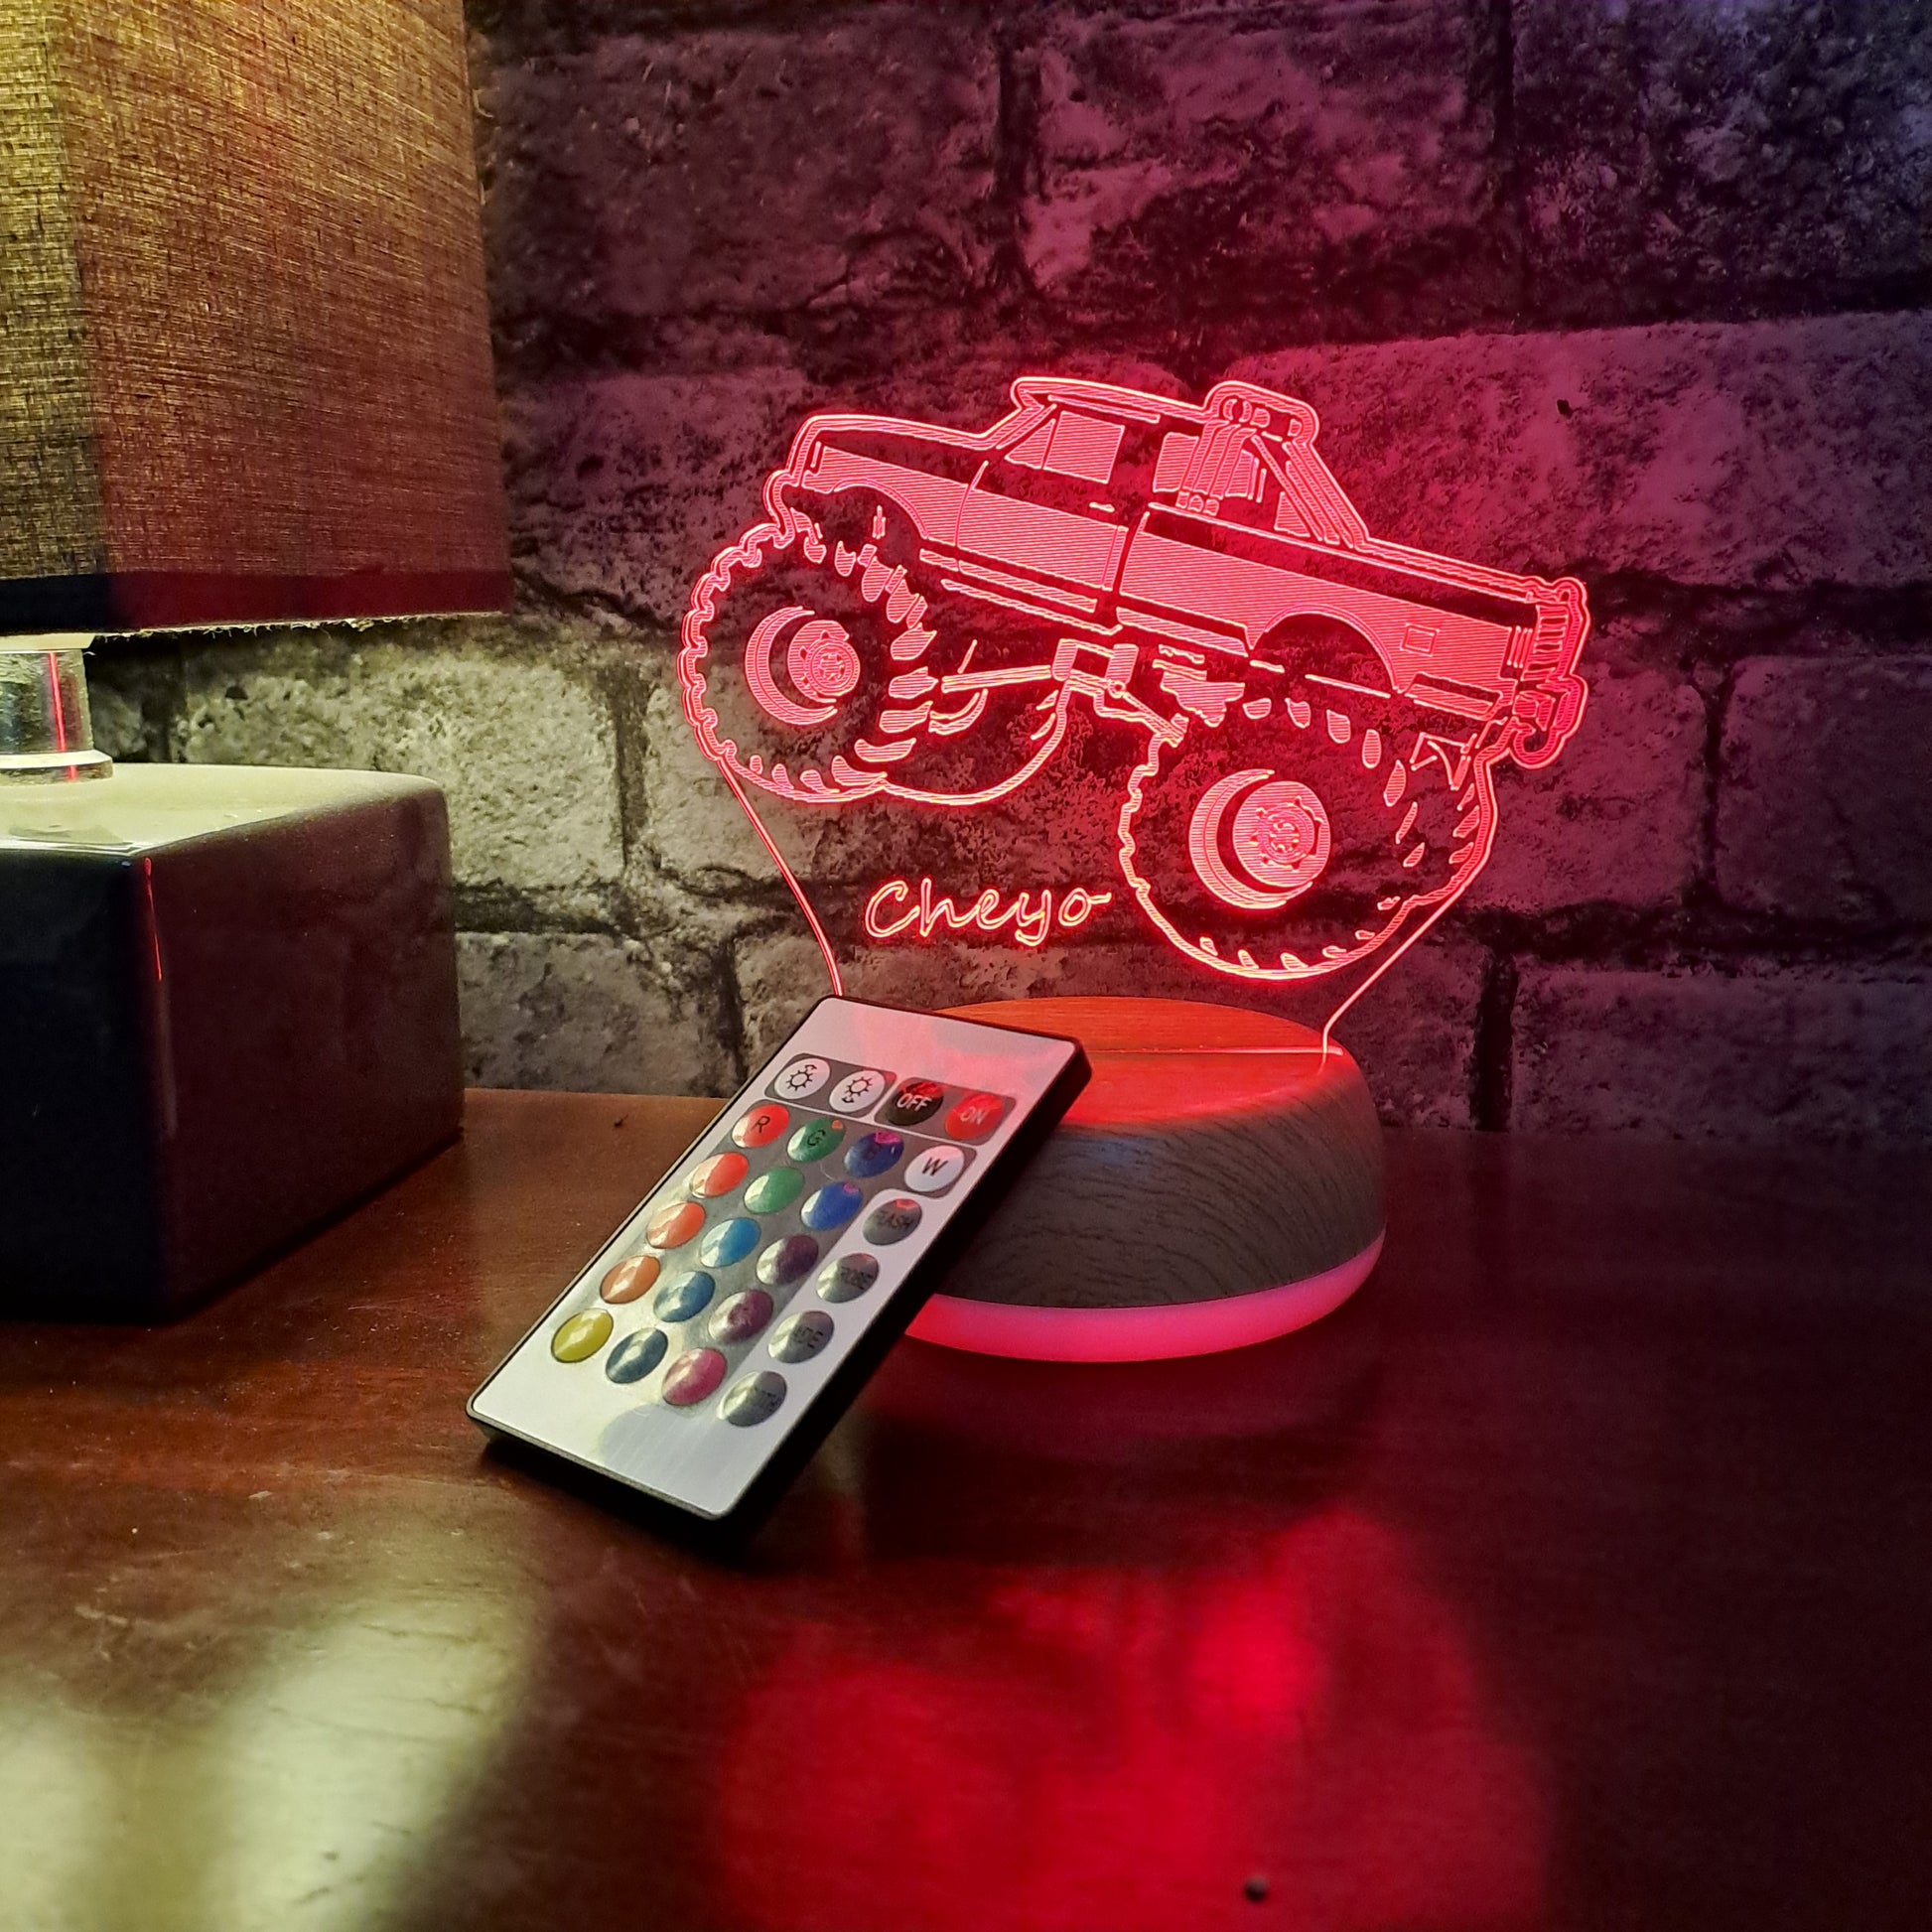 Monster Truck LED Light - Night Light - Stock Car & Banger Toy Tracks